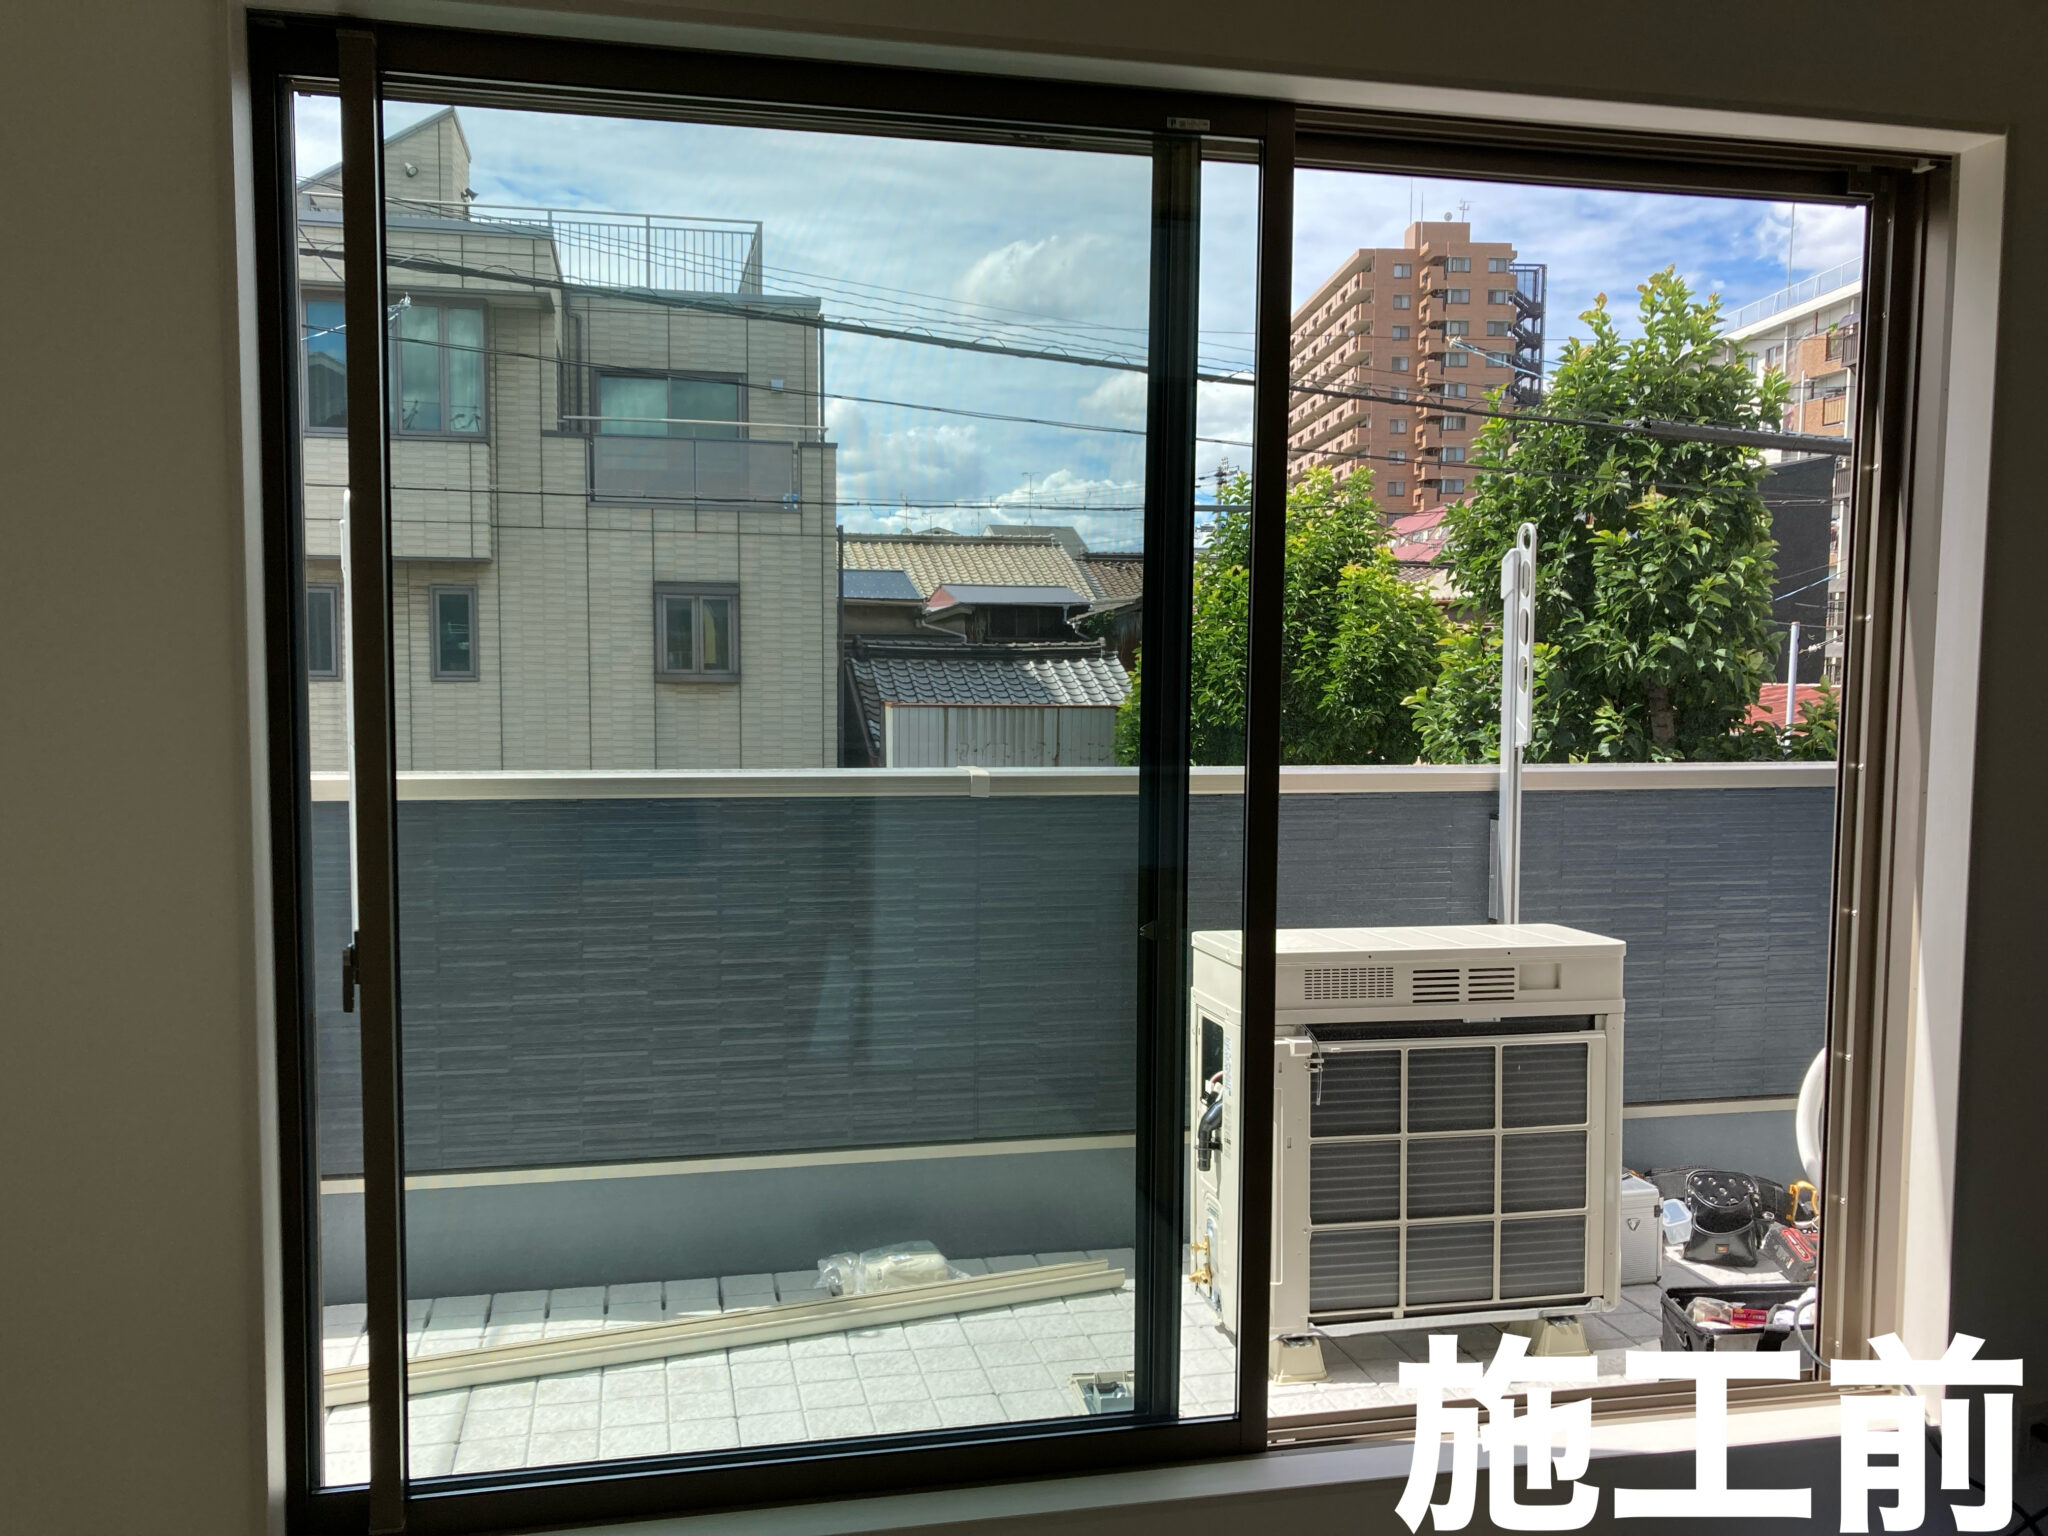 大阪市 新築住宅でハーフミラーフィルム施工しました。 大阪府堺市の住宅窓ガラスフィルム施工 Kcreate